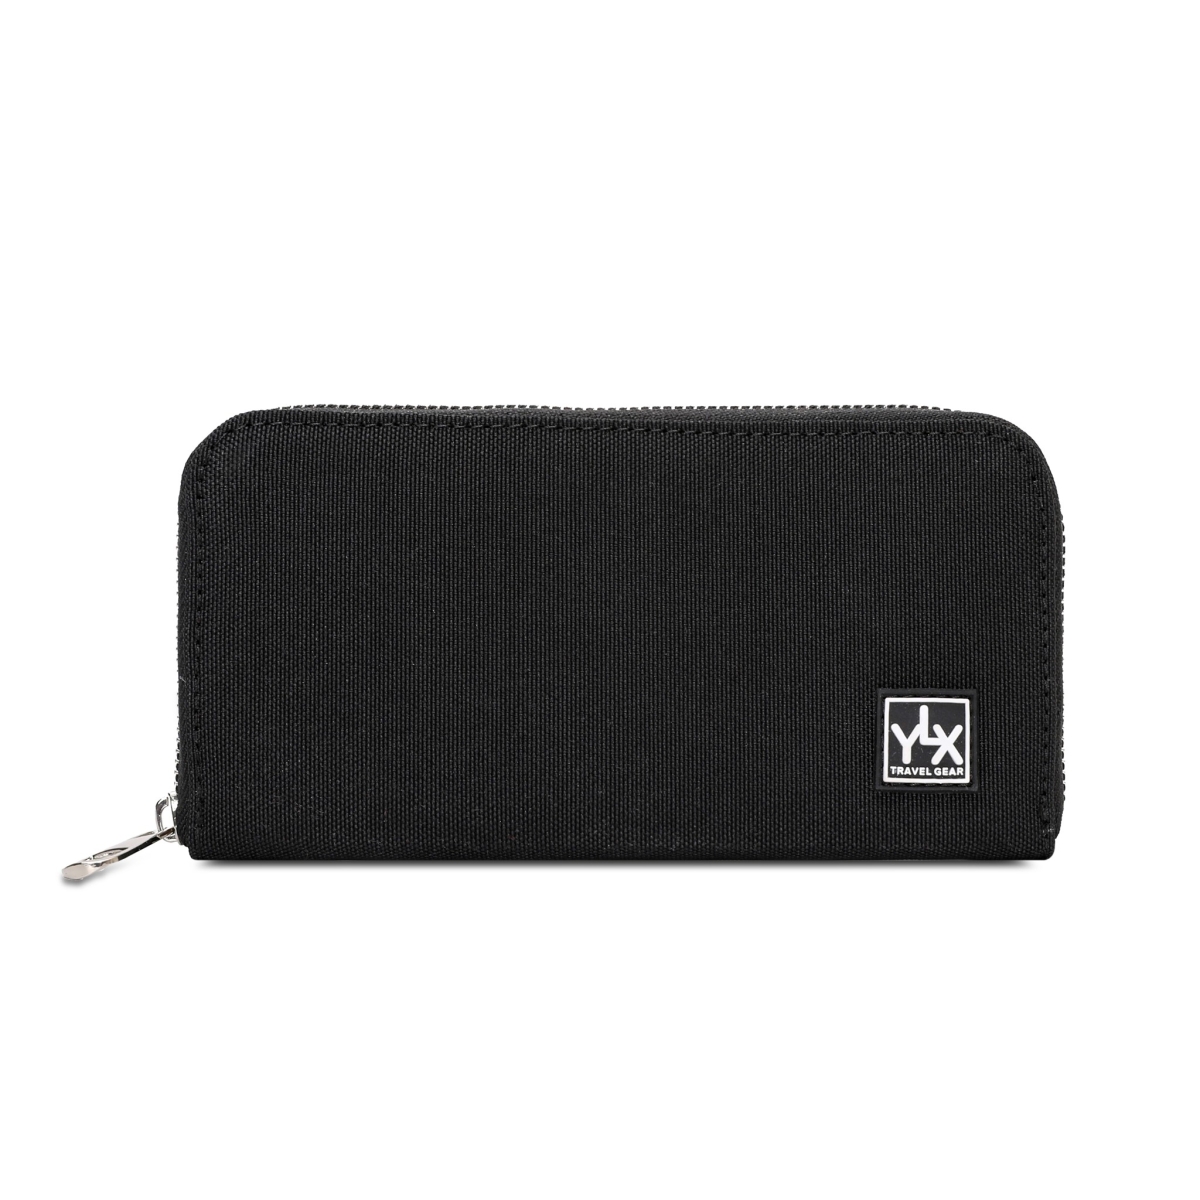 YLX Koa wallet